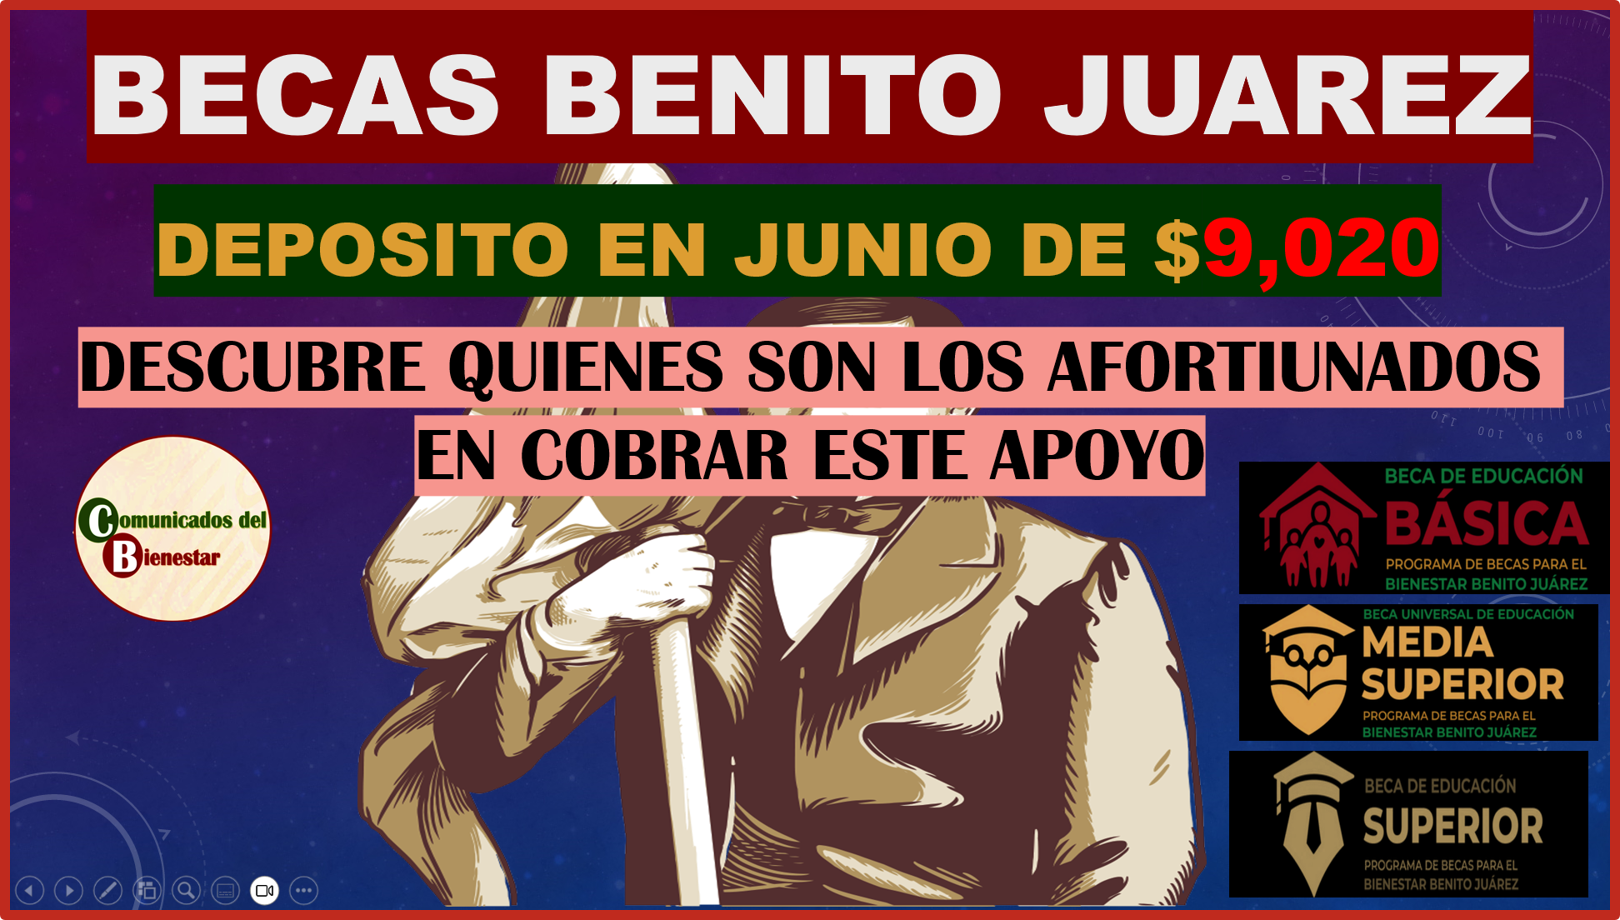 ATENCION BECARIOS REANUDACION DE PAGOS EN JUNIO QUIENES COBRAN $9,020 AQUI TE LO DECIMOS